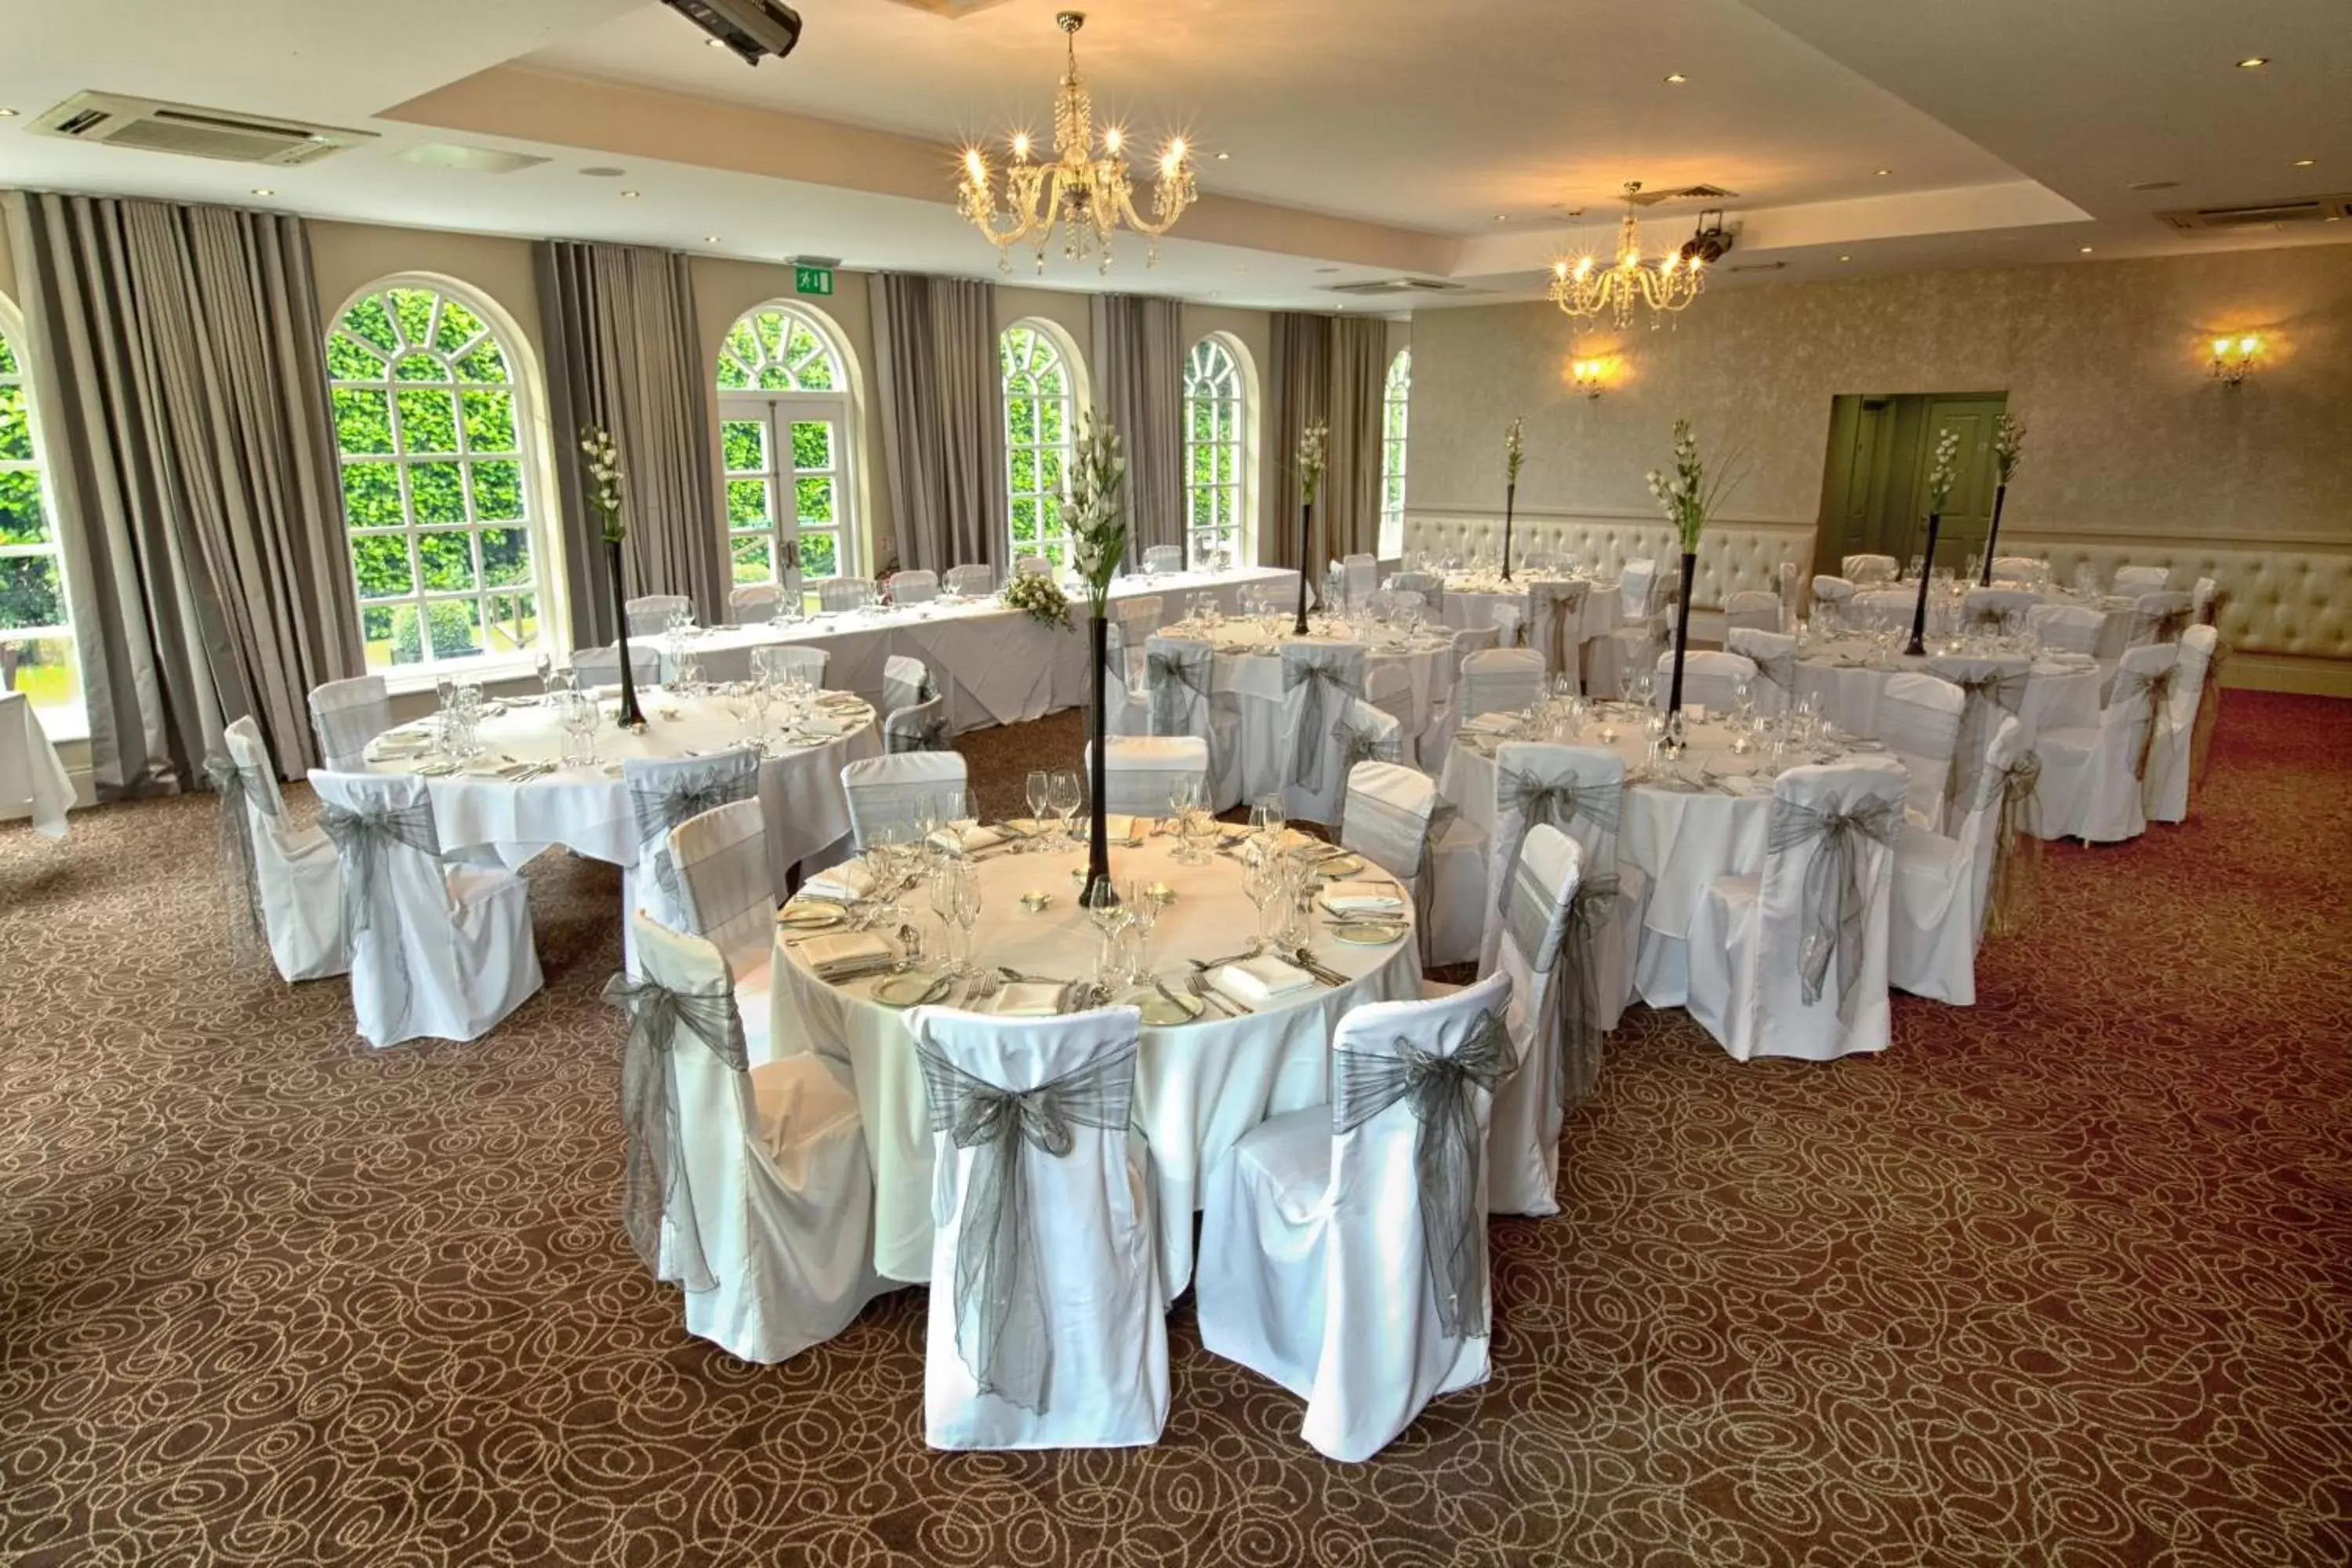 Banquet/Function facilities, Banquet Facilities in Bannatyne Hotel Darlington